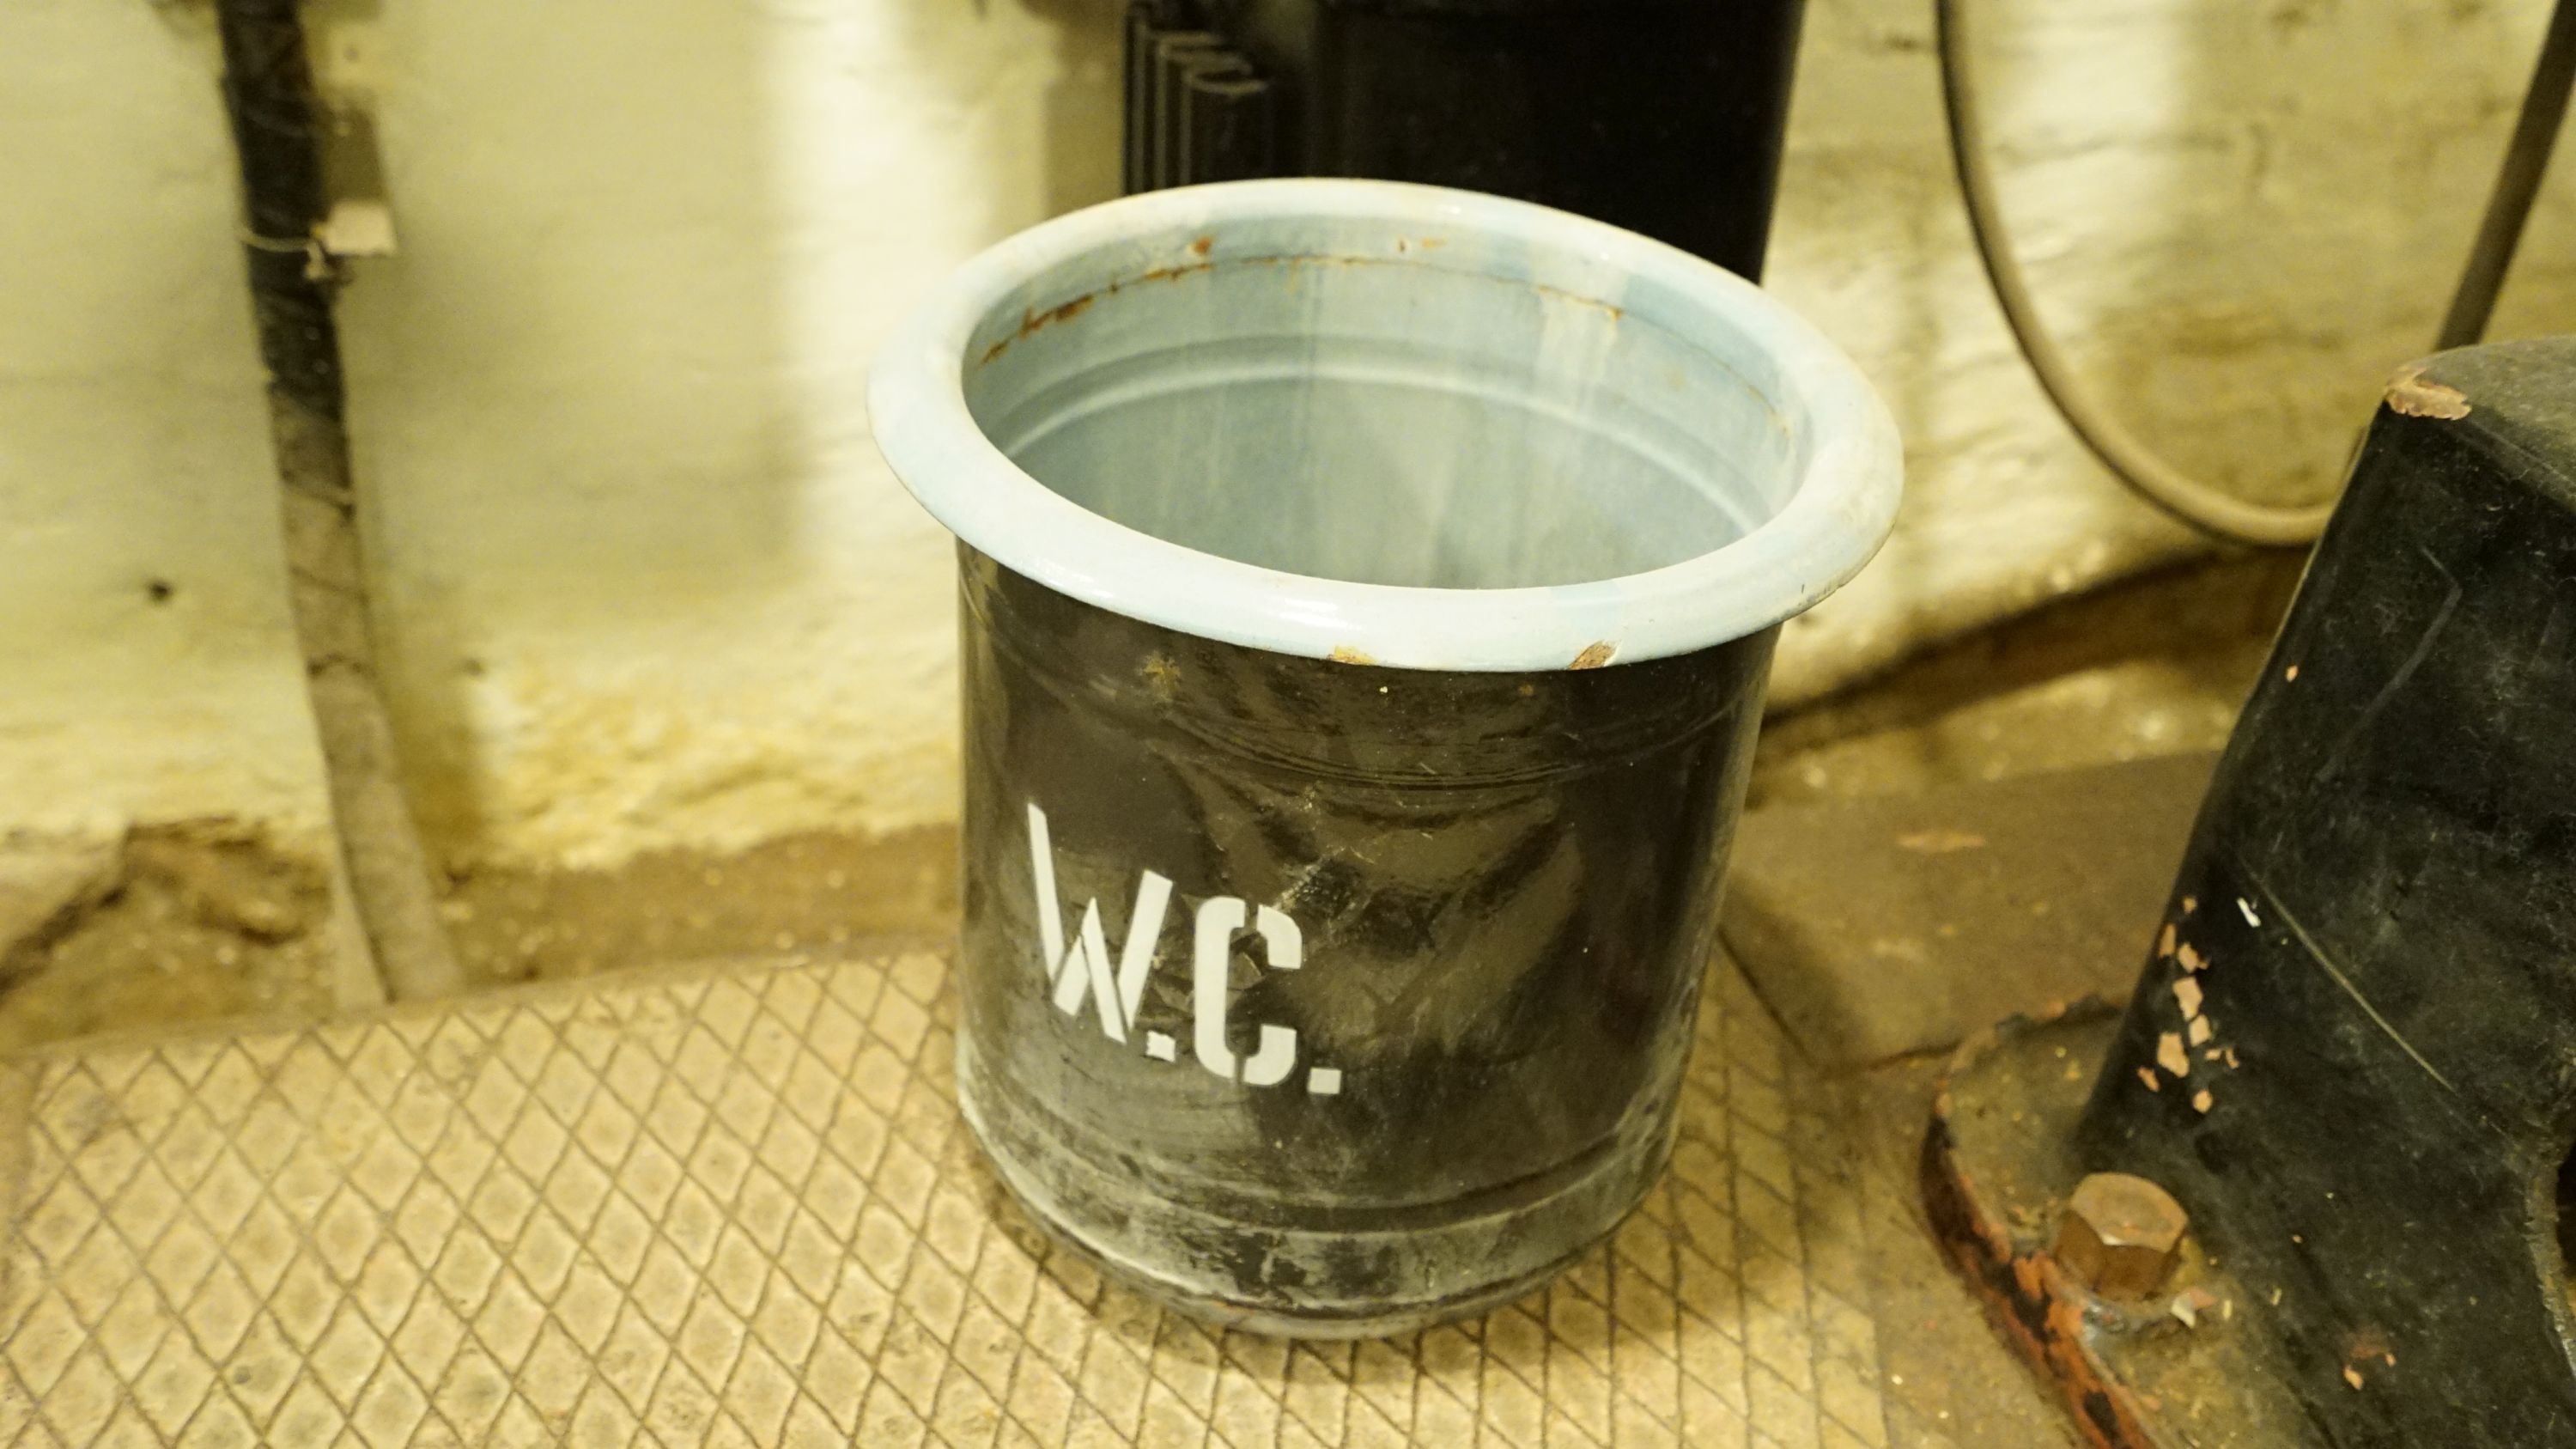 Tábori WC (Sziklakórház Atombunker Múzeum CC BY-NC-SA)